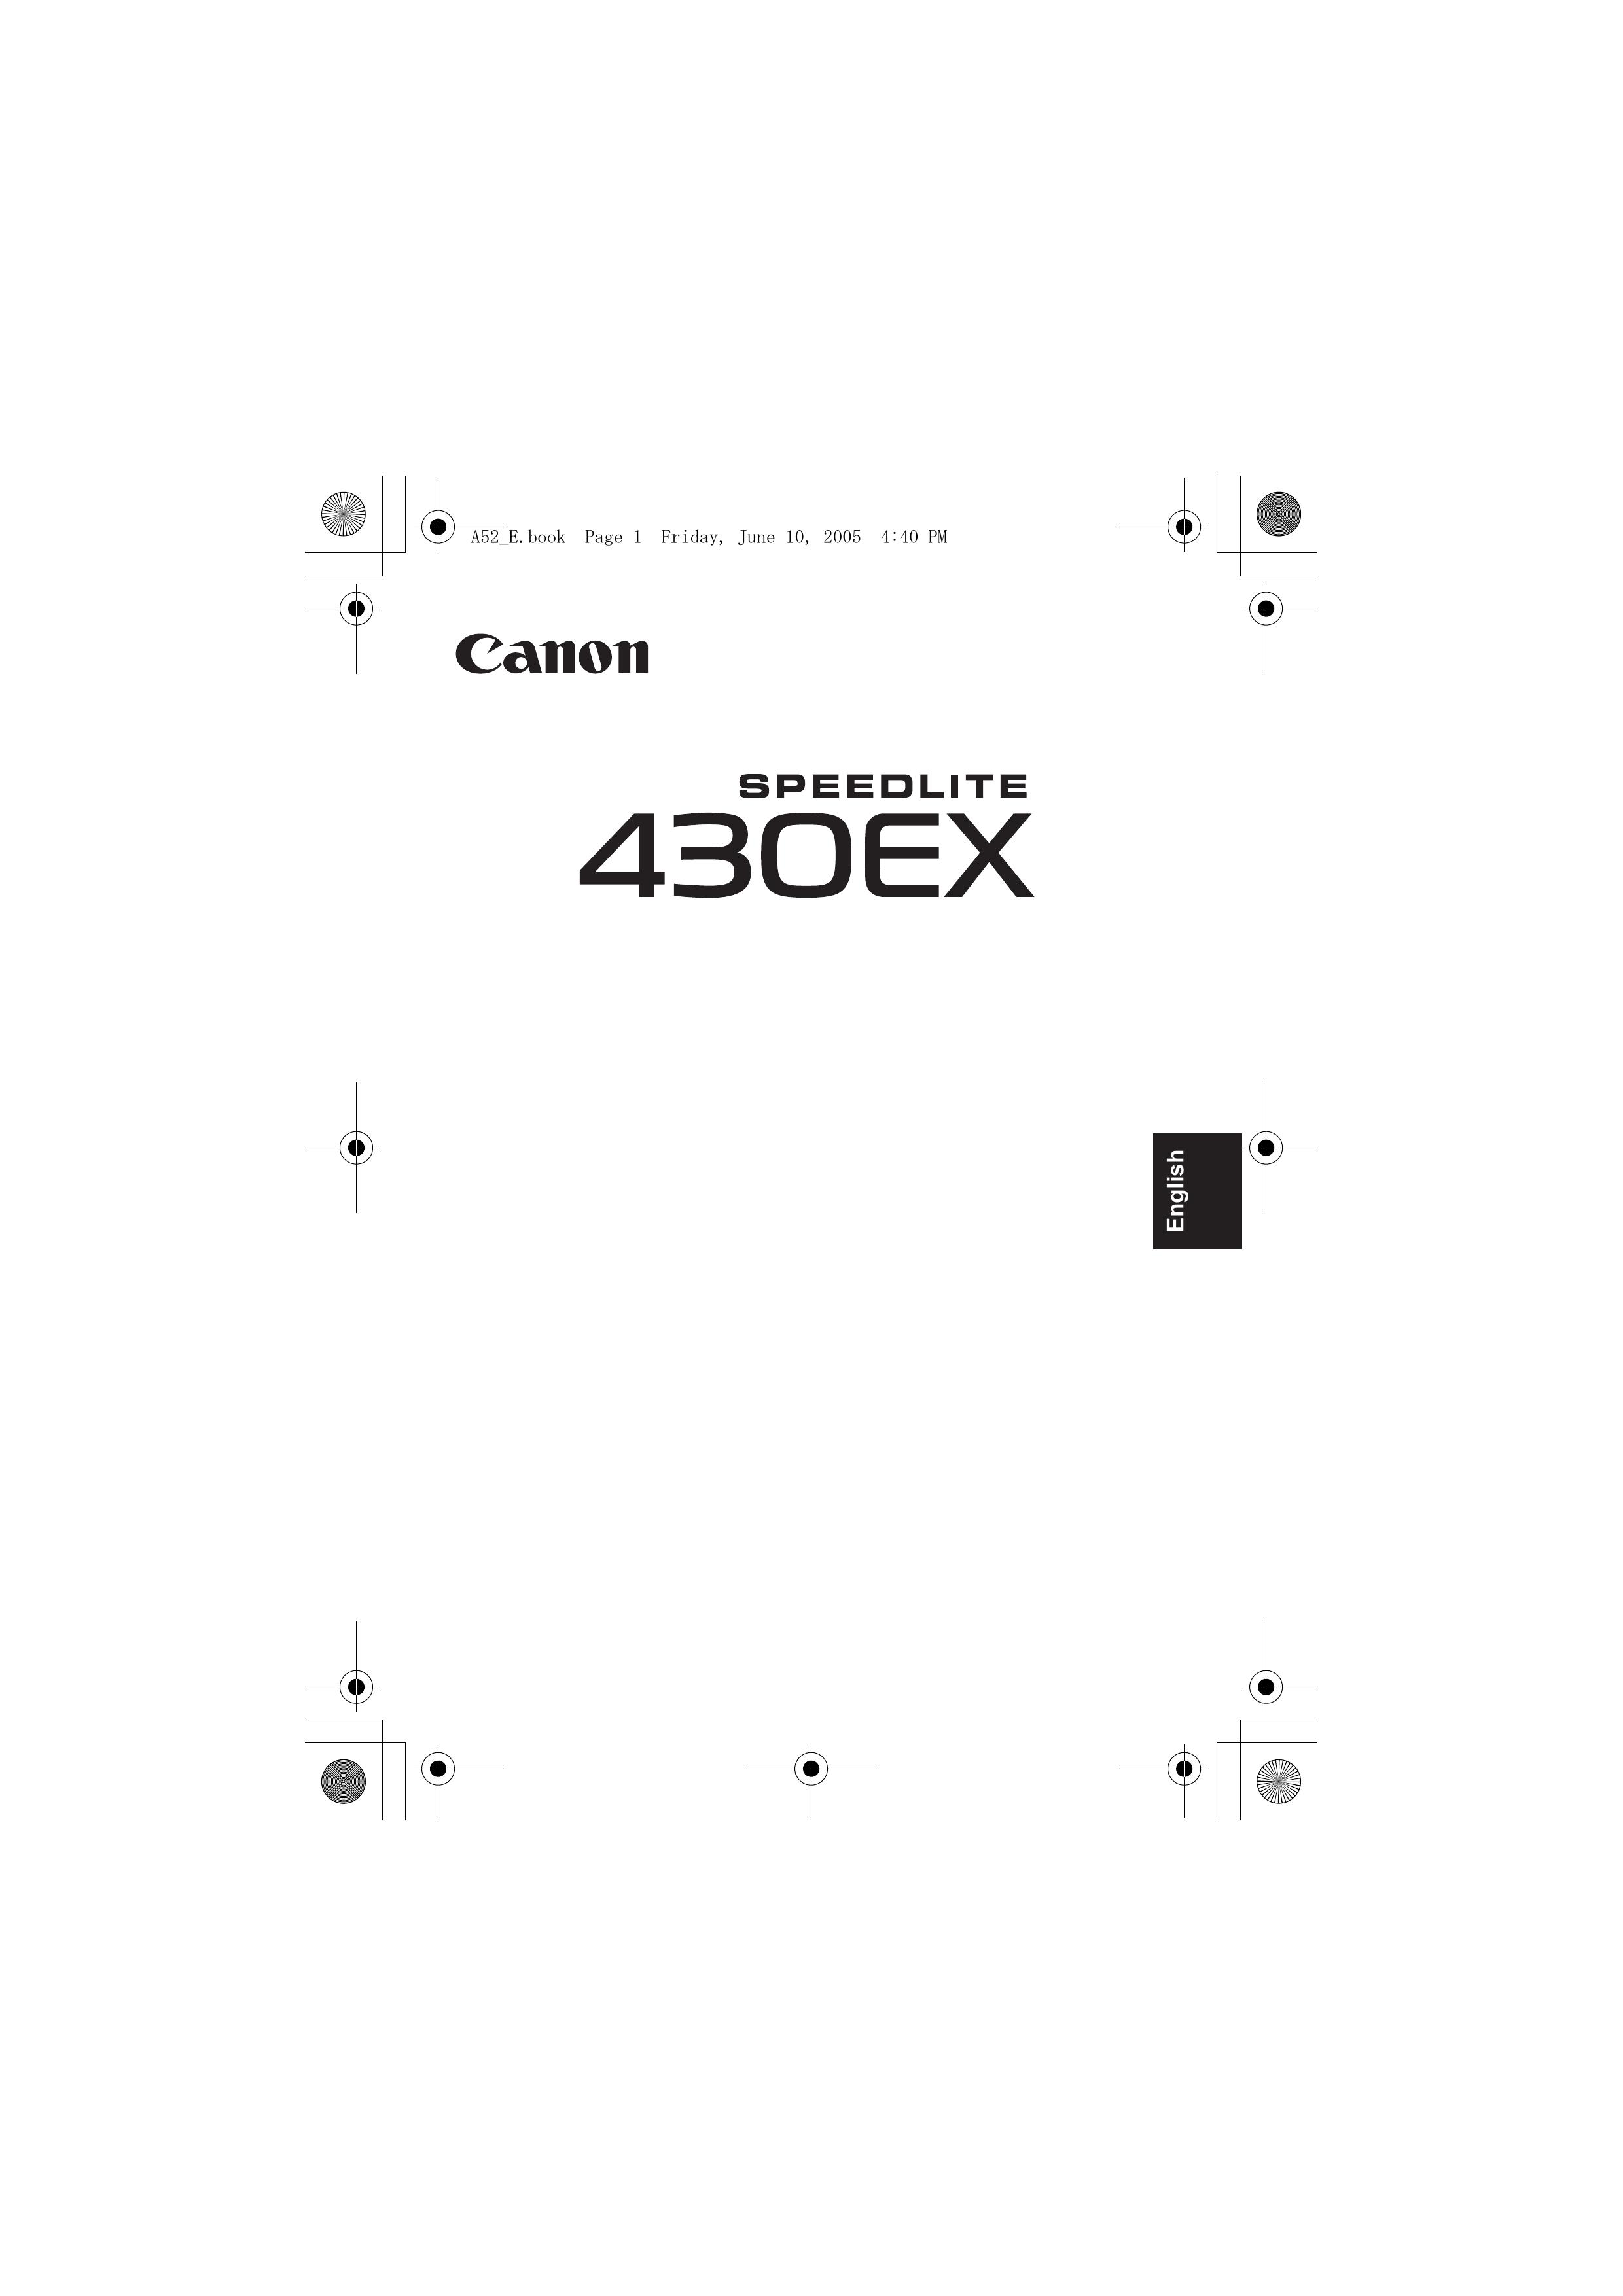 Canon 430EX Camera Accessories User Manual